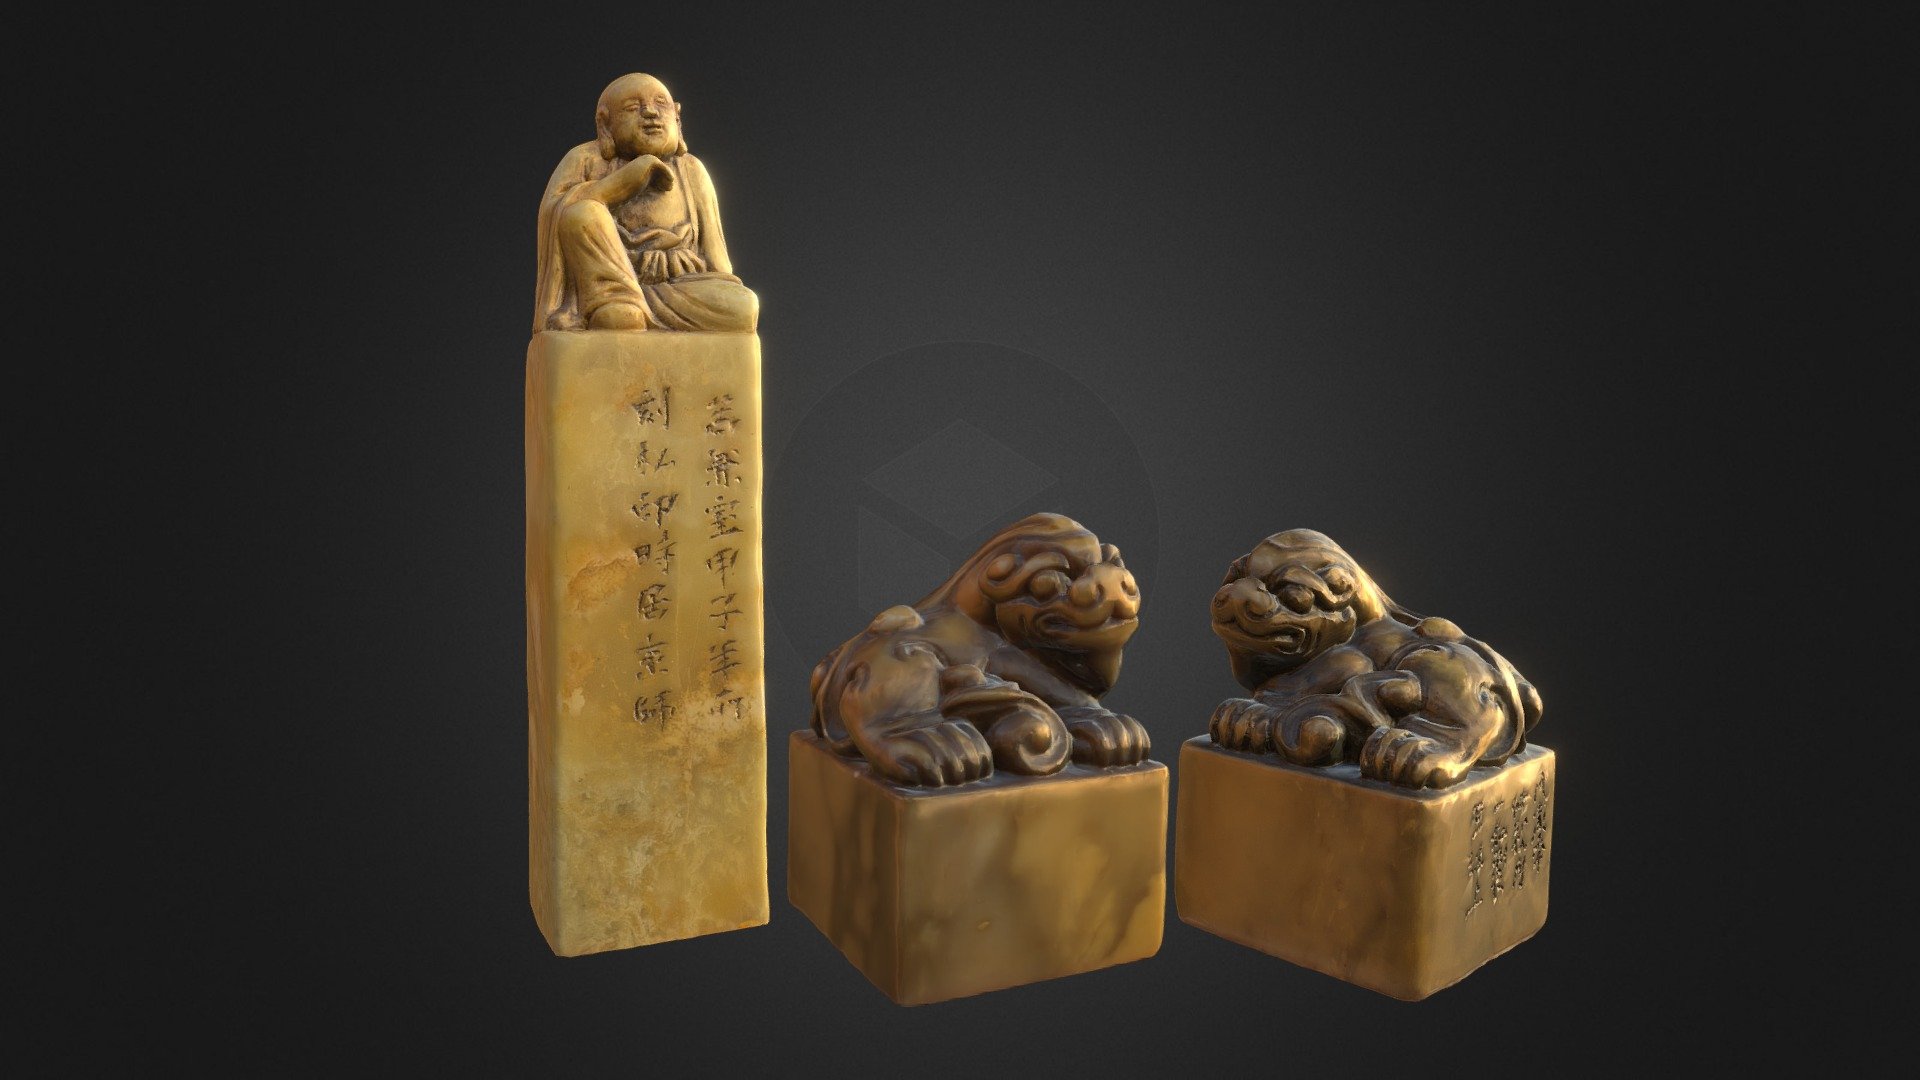 Zhao Zhiqian seal engraving 清代著名篆刻家趙之謙所治印章